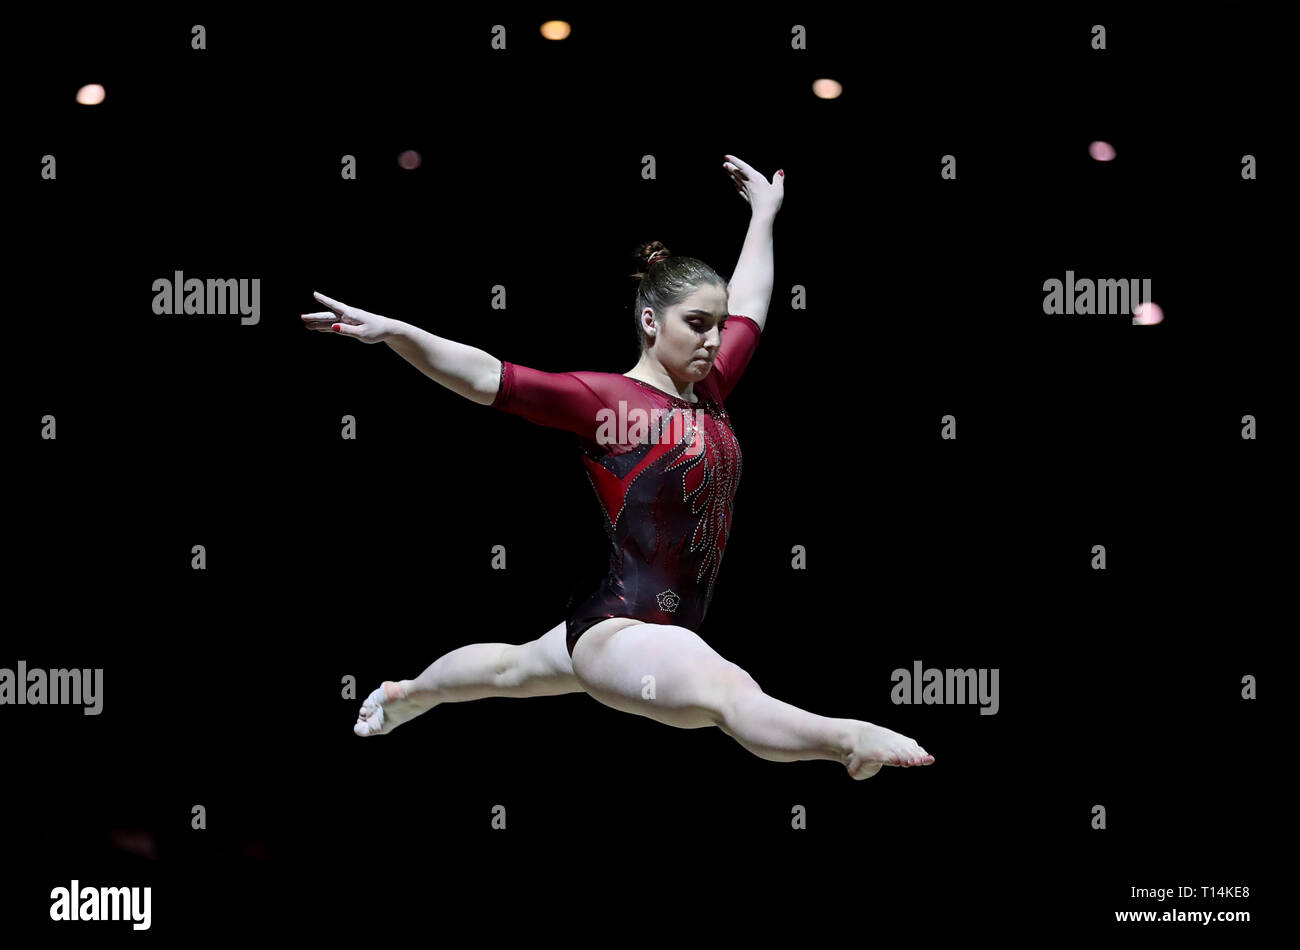 Russlands Aliya Mustafina in Aktion während der Gymnastik Wm in den Resorts World Arena, Birmingham. Stockfoto